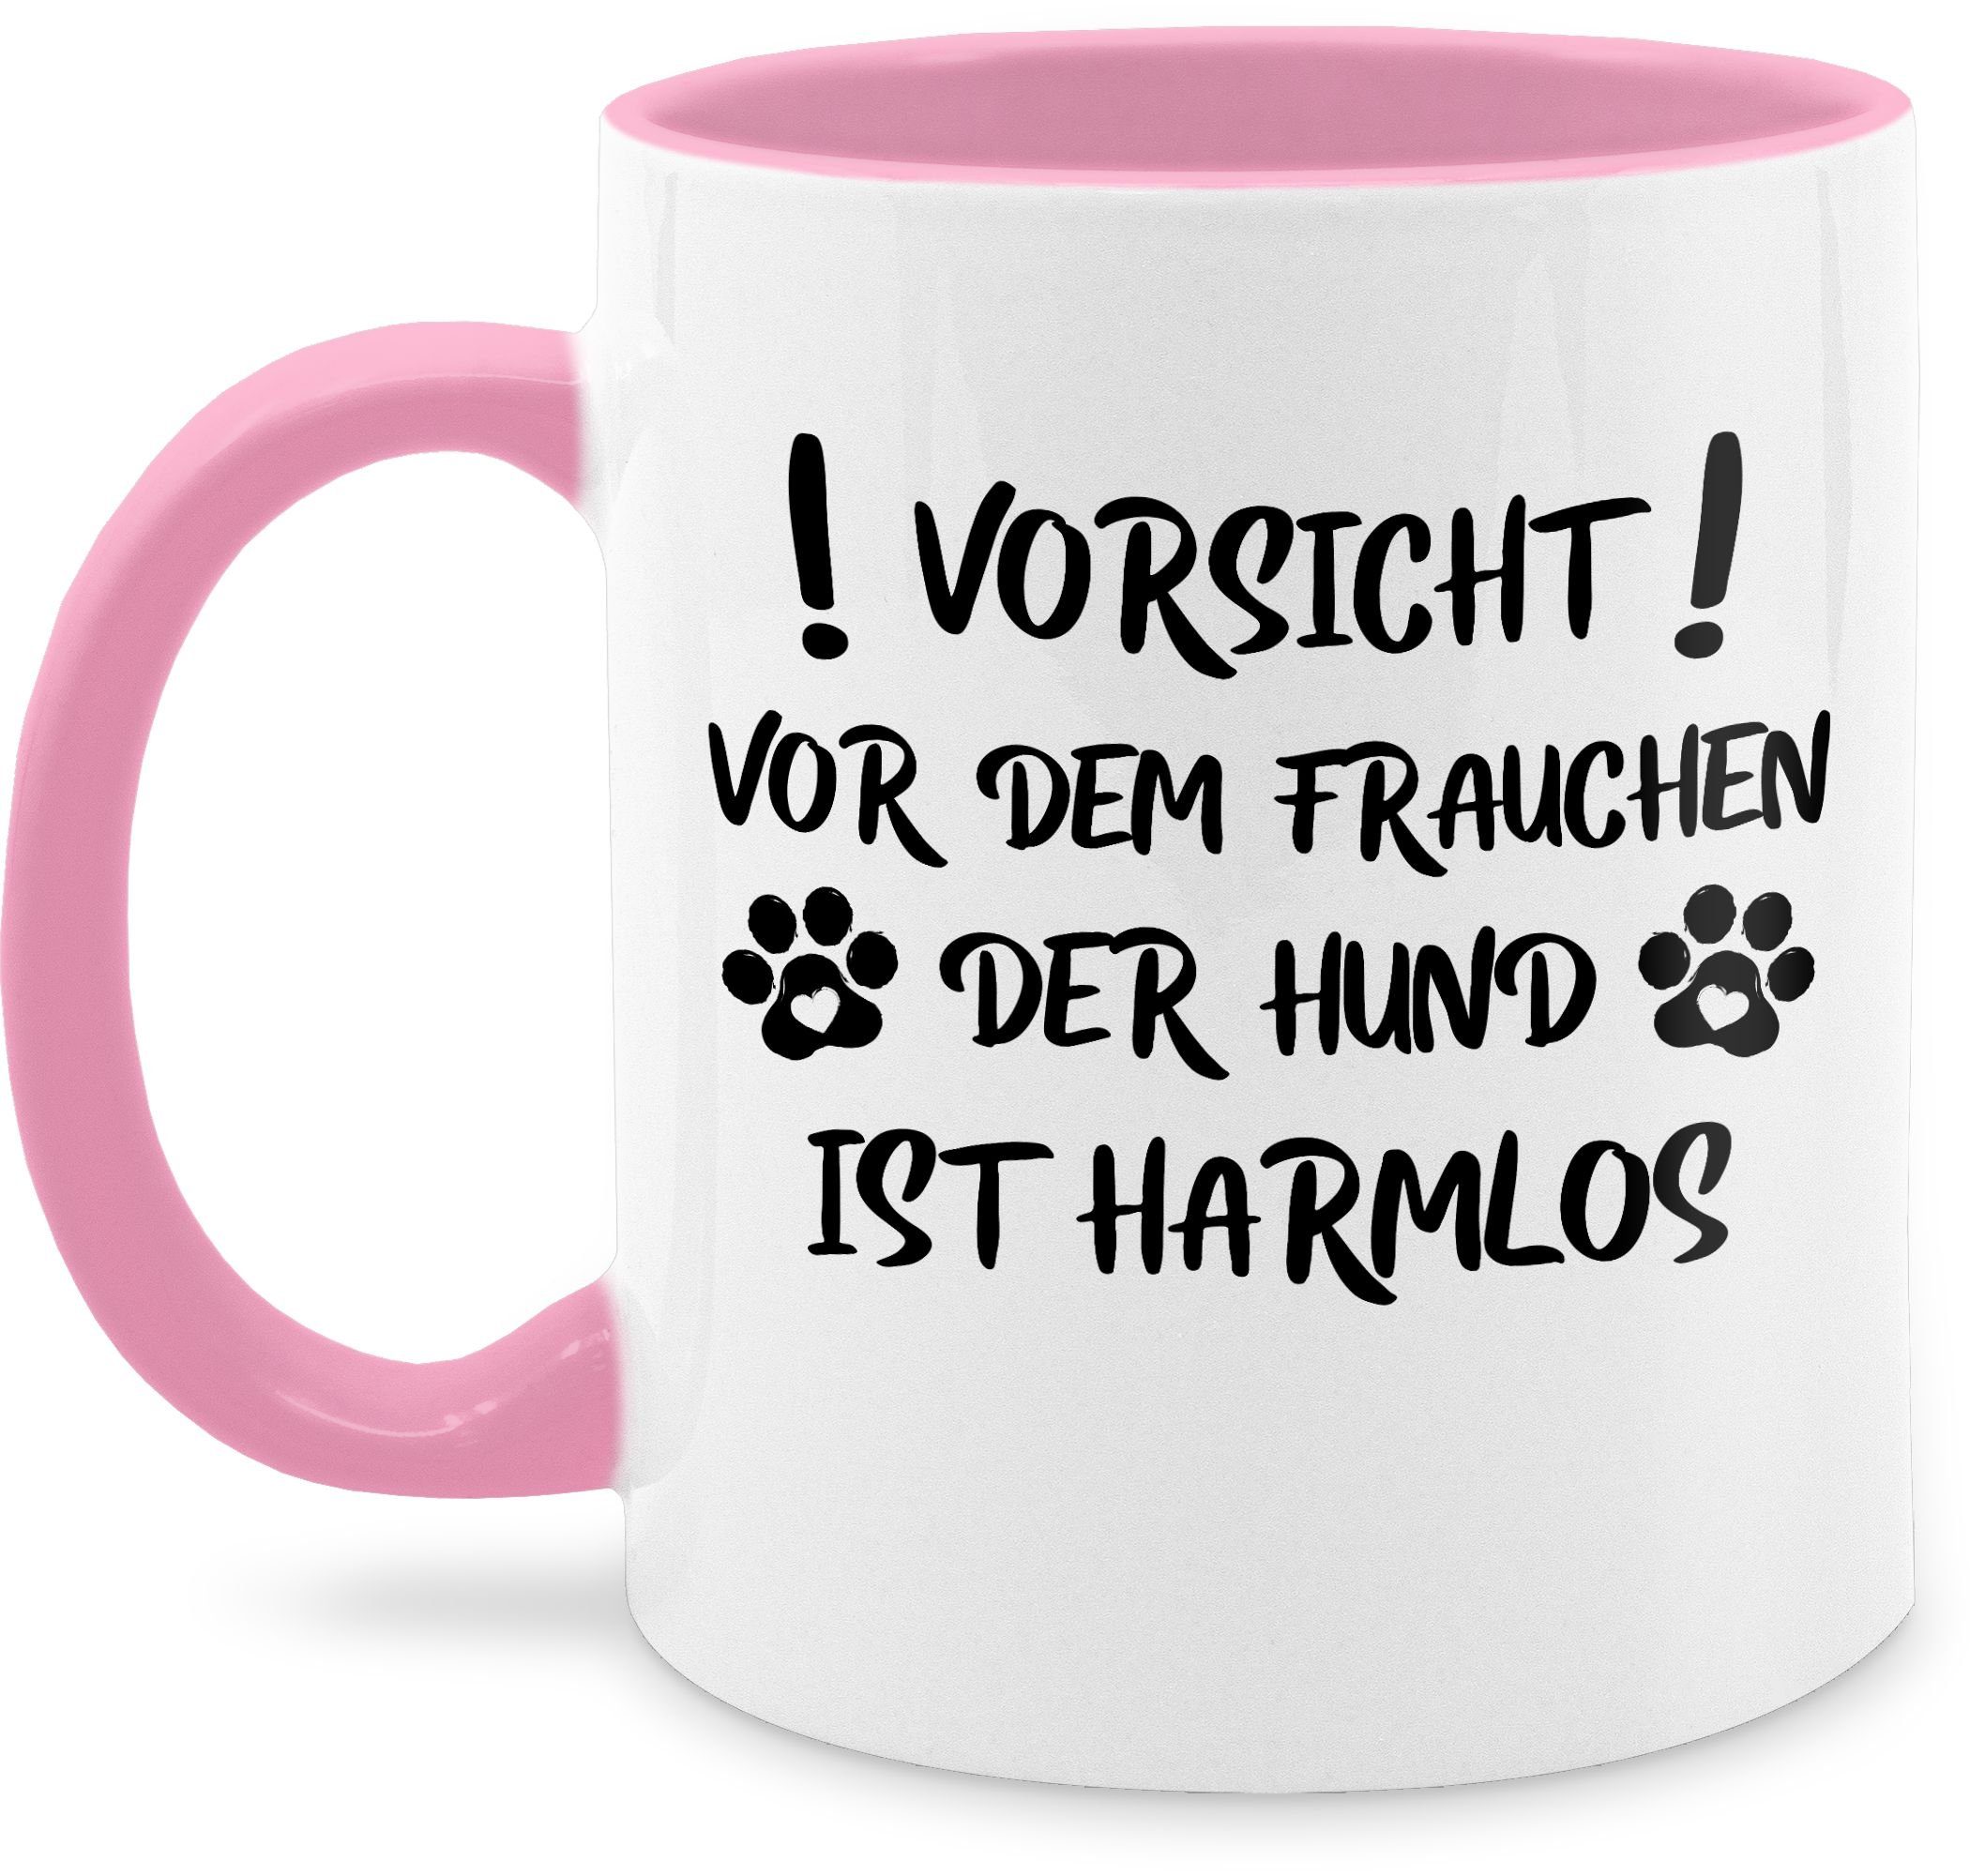 Shirtracer Tasse Pfoten - Vorsicht der vor Hund Schwarz, ist harmlos - Rosa Frauchen Sprüche Keramik, 1 Statement dem